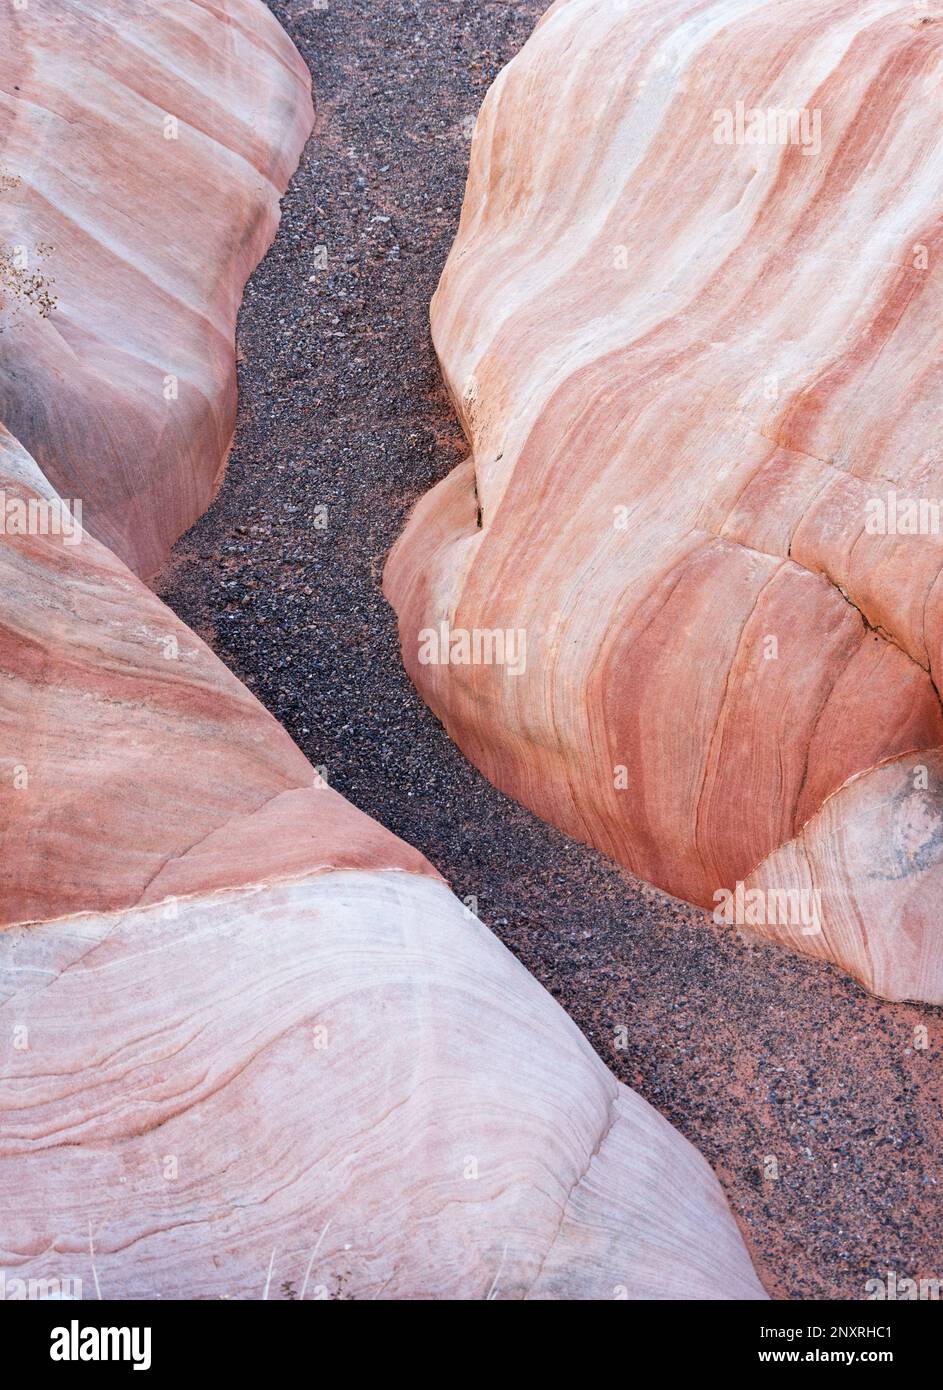 détail d'un chenal sec entre le substrat rocheux en grès à couches lisses Banque D'Images